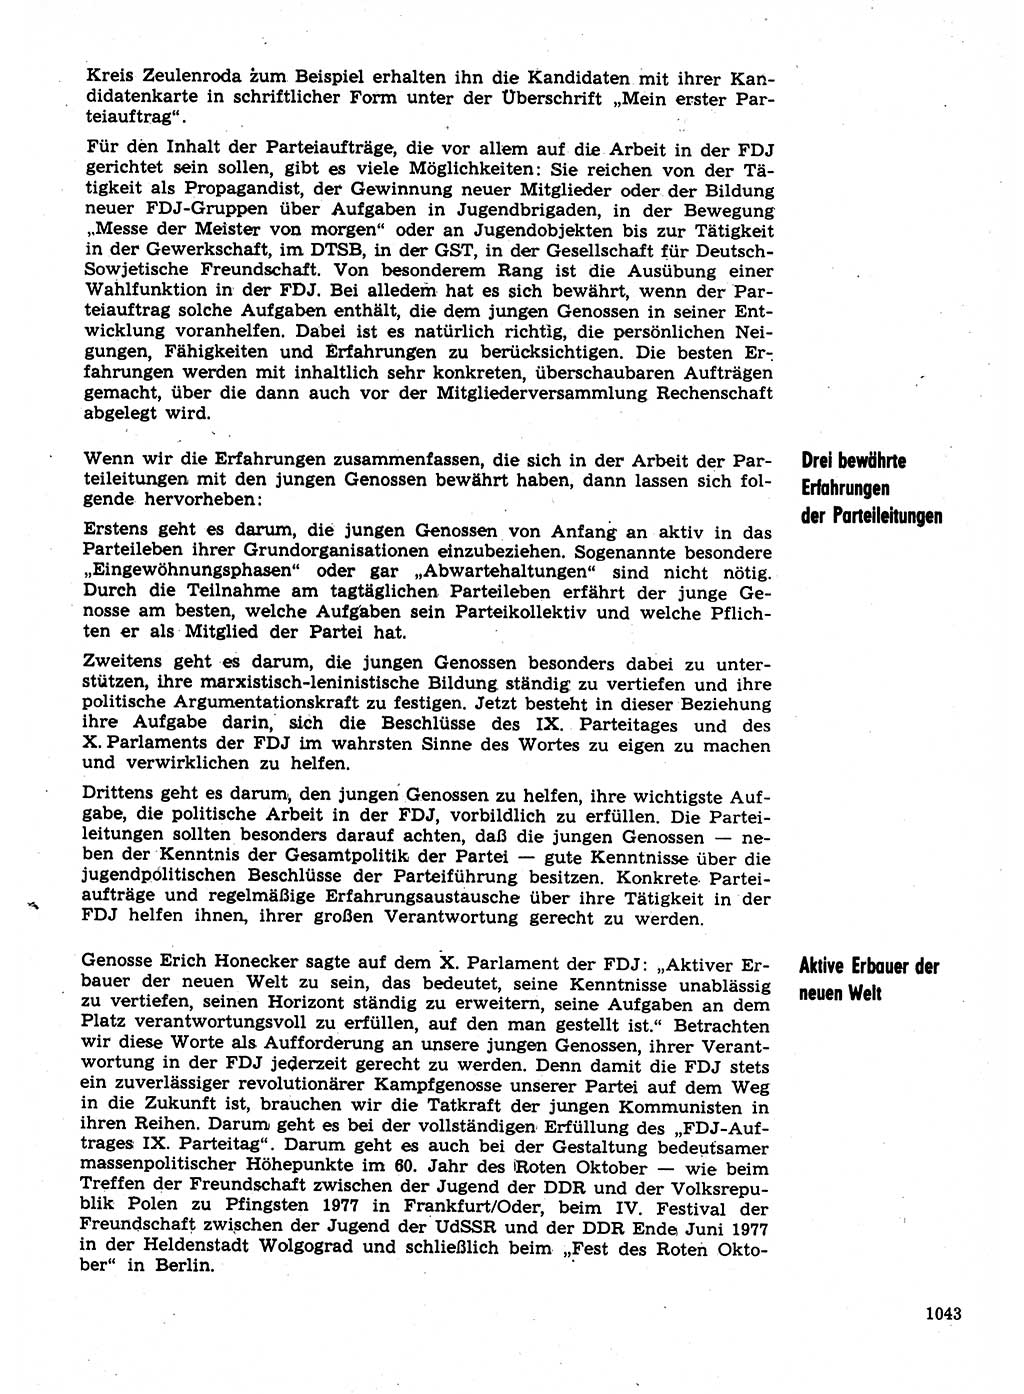 Neuer Weg (NW), Organ des Zentralkomitees (ZK) der SED (Sozialistische Einheitspartei Deutschlands) fÃ¼r Fragen des Parteilebens, 31. Jahrgang [Deutsche Demokratische Republik (DDR)] 1976, Seite 1043 (NW ZK SED DDR 1976, S. 1043)